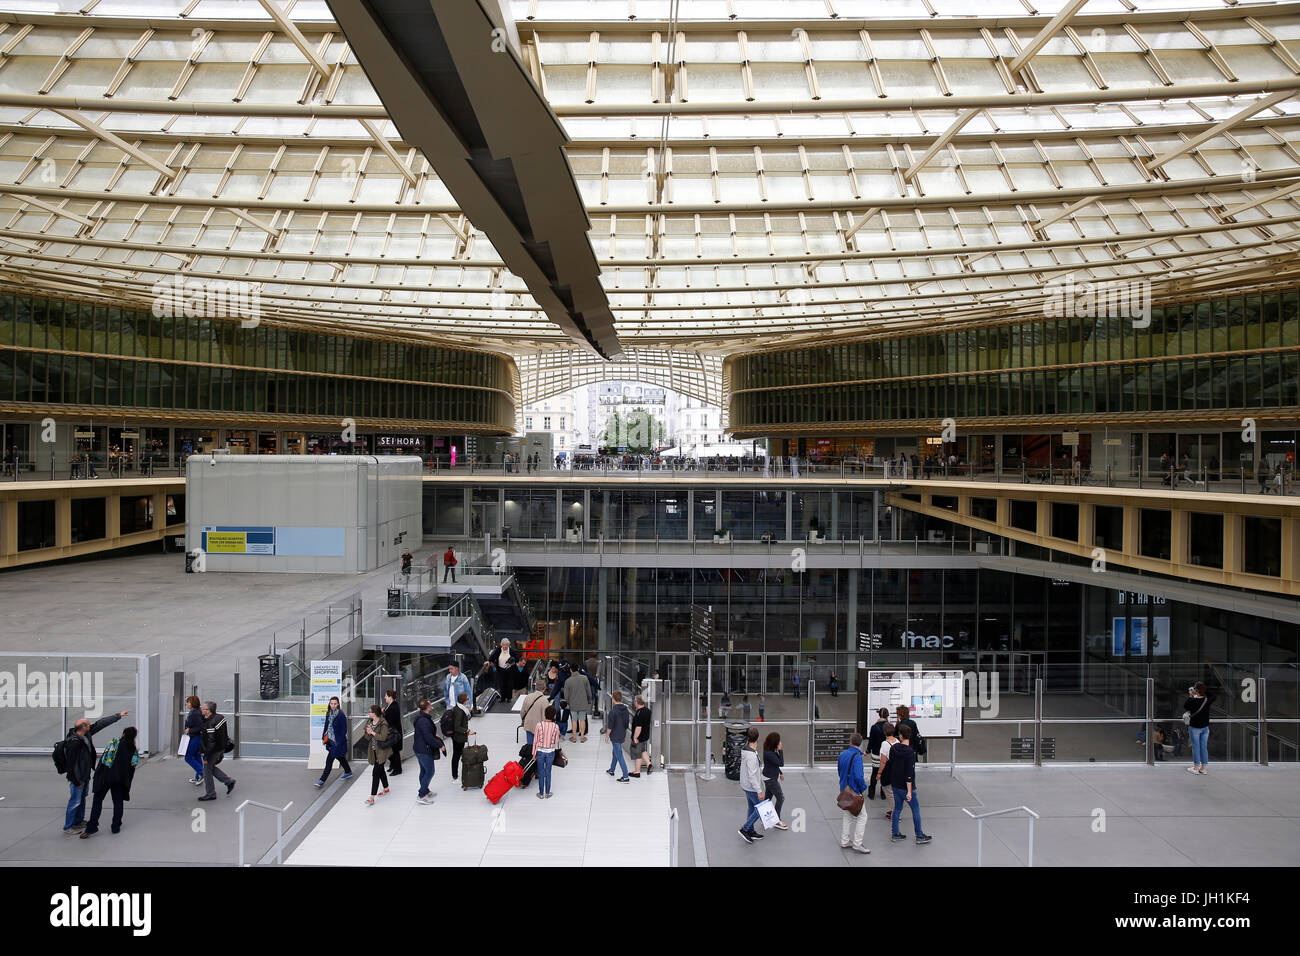 Einkaufszentrum in Les Halles, Paris. Frankreich. Stockfoto